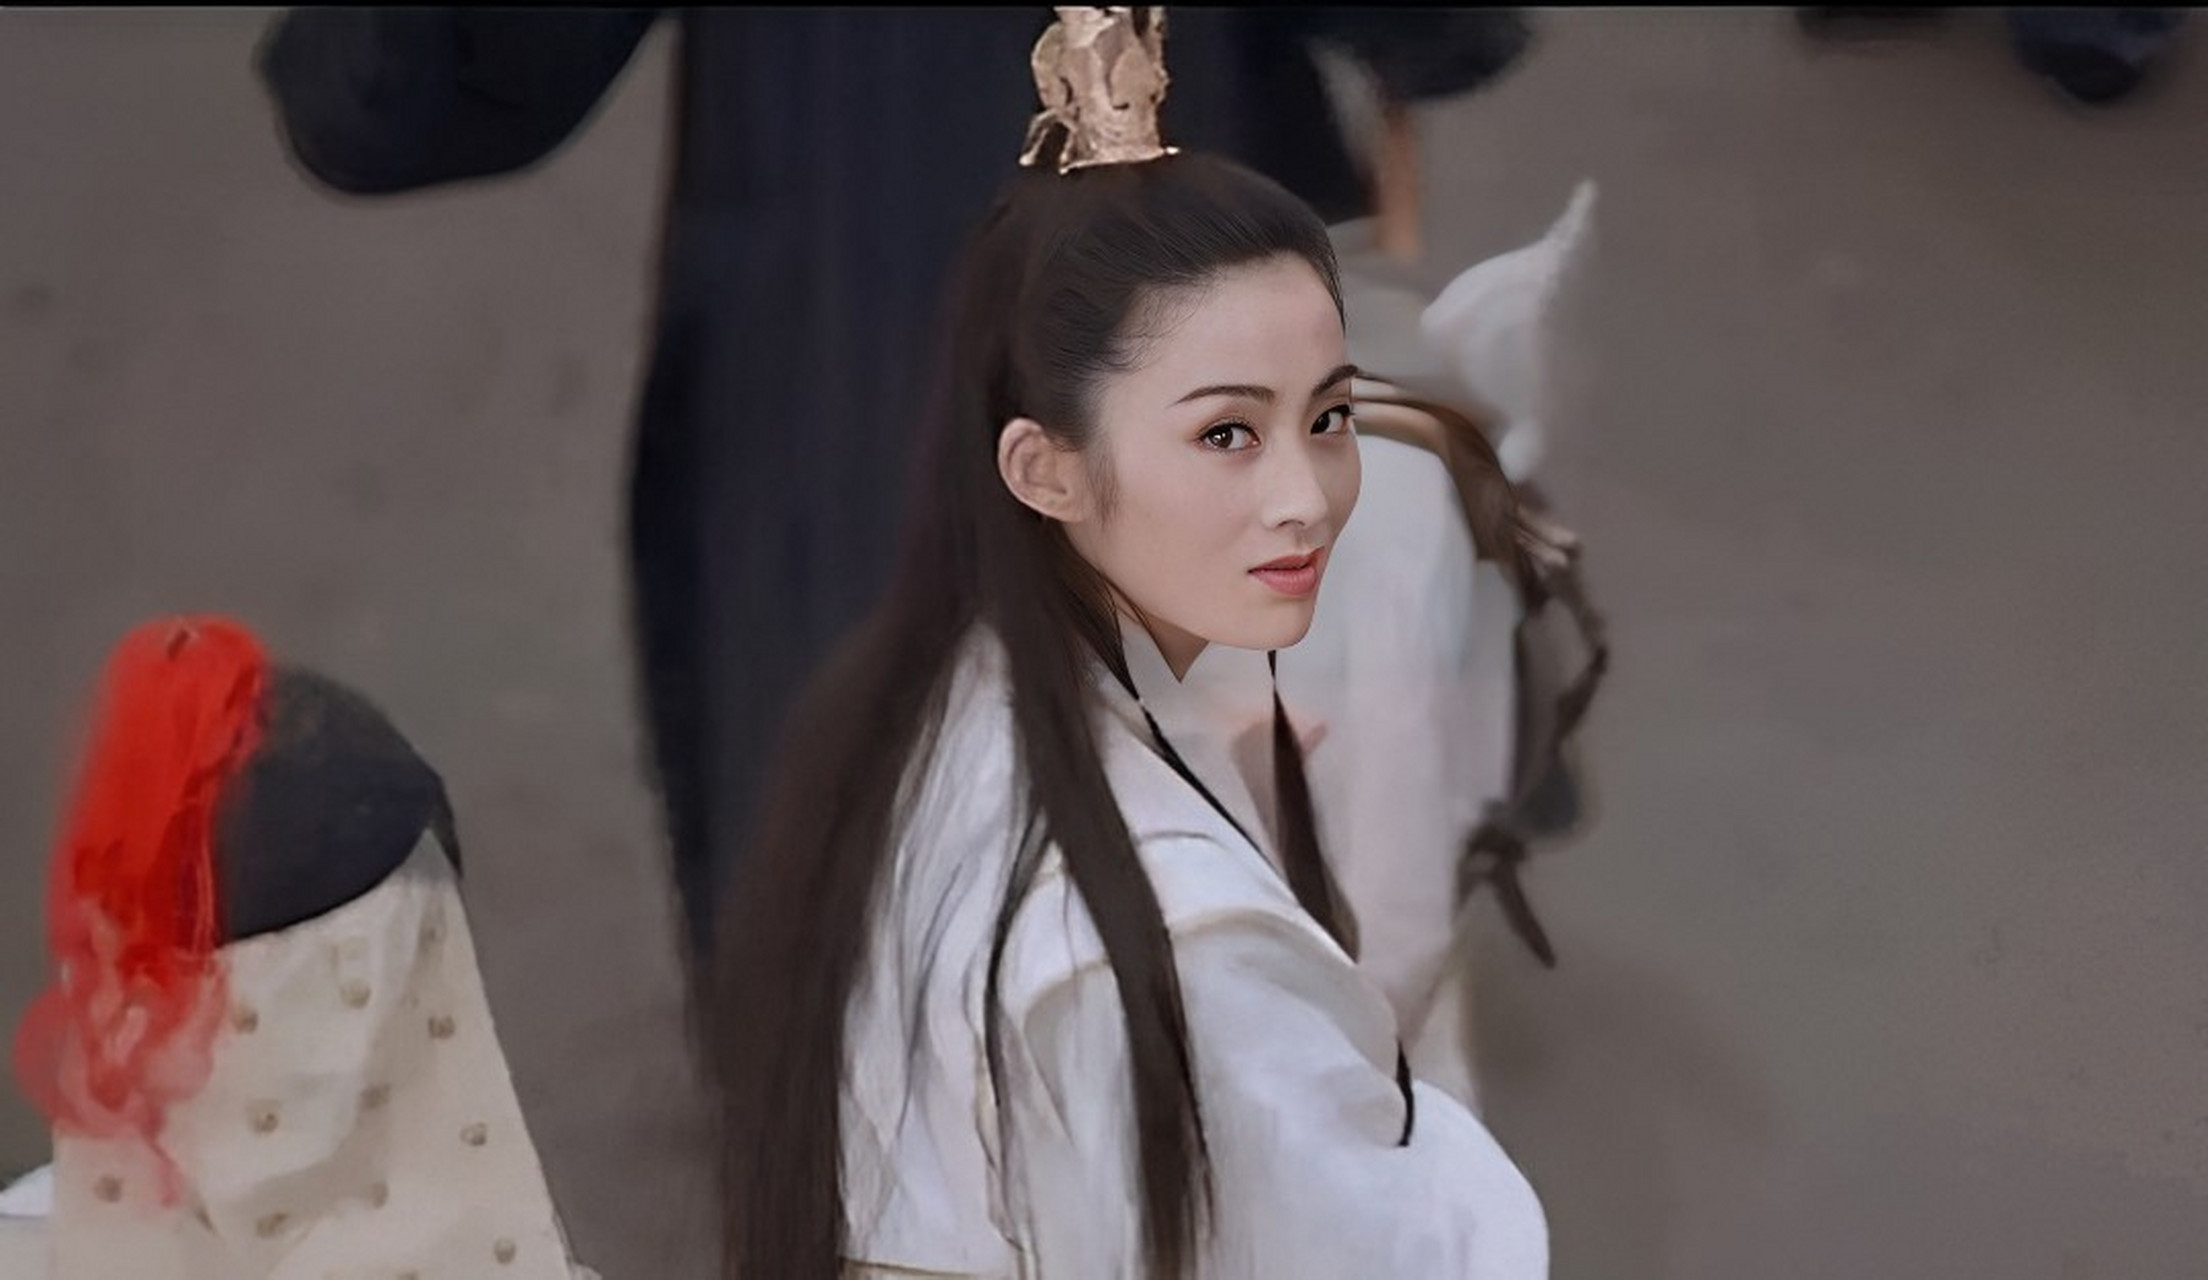 这是女神张敏饰演的赵敏郡主,俏皮而清纯,美丽而英气,这经典的回眸